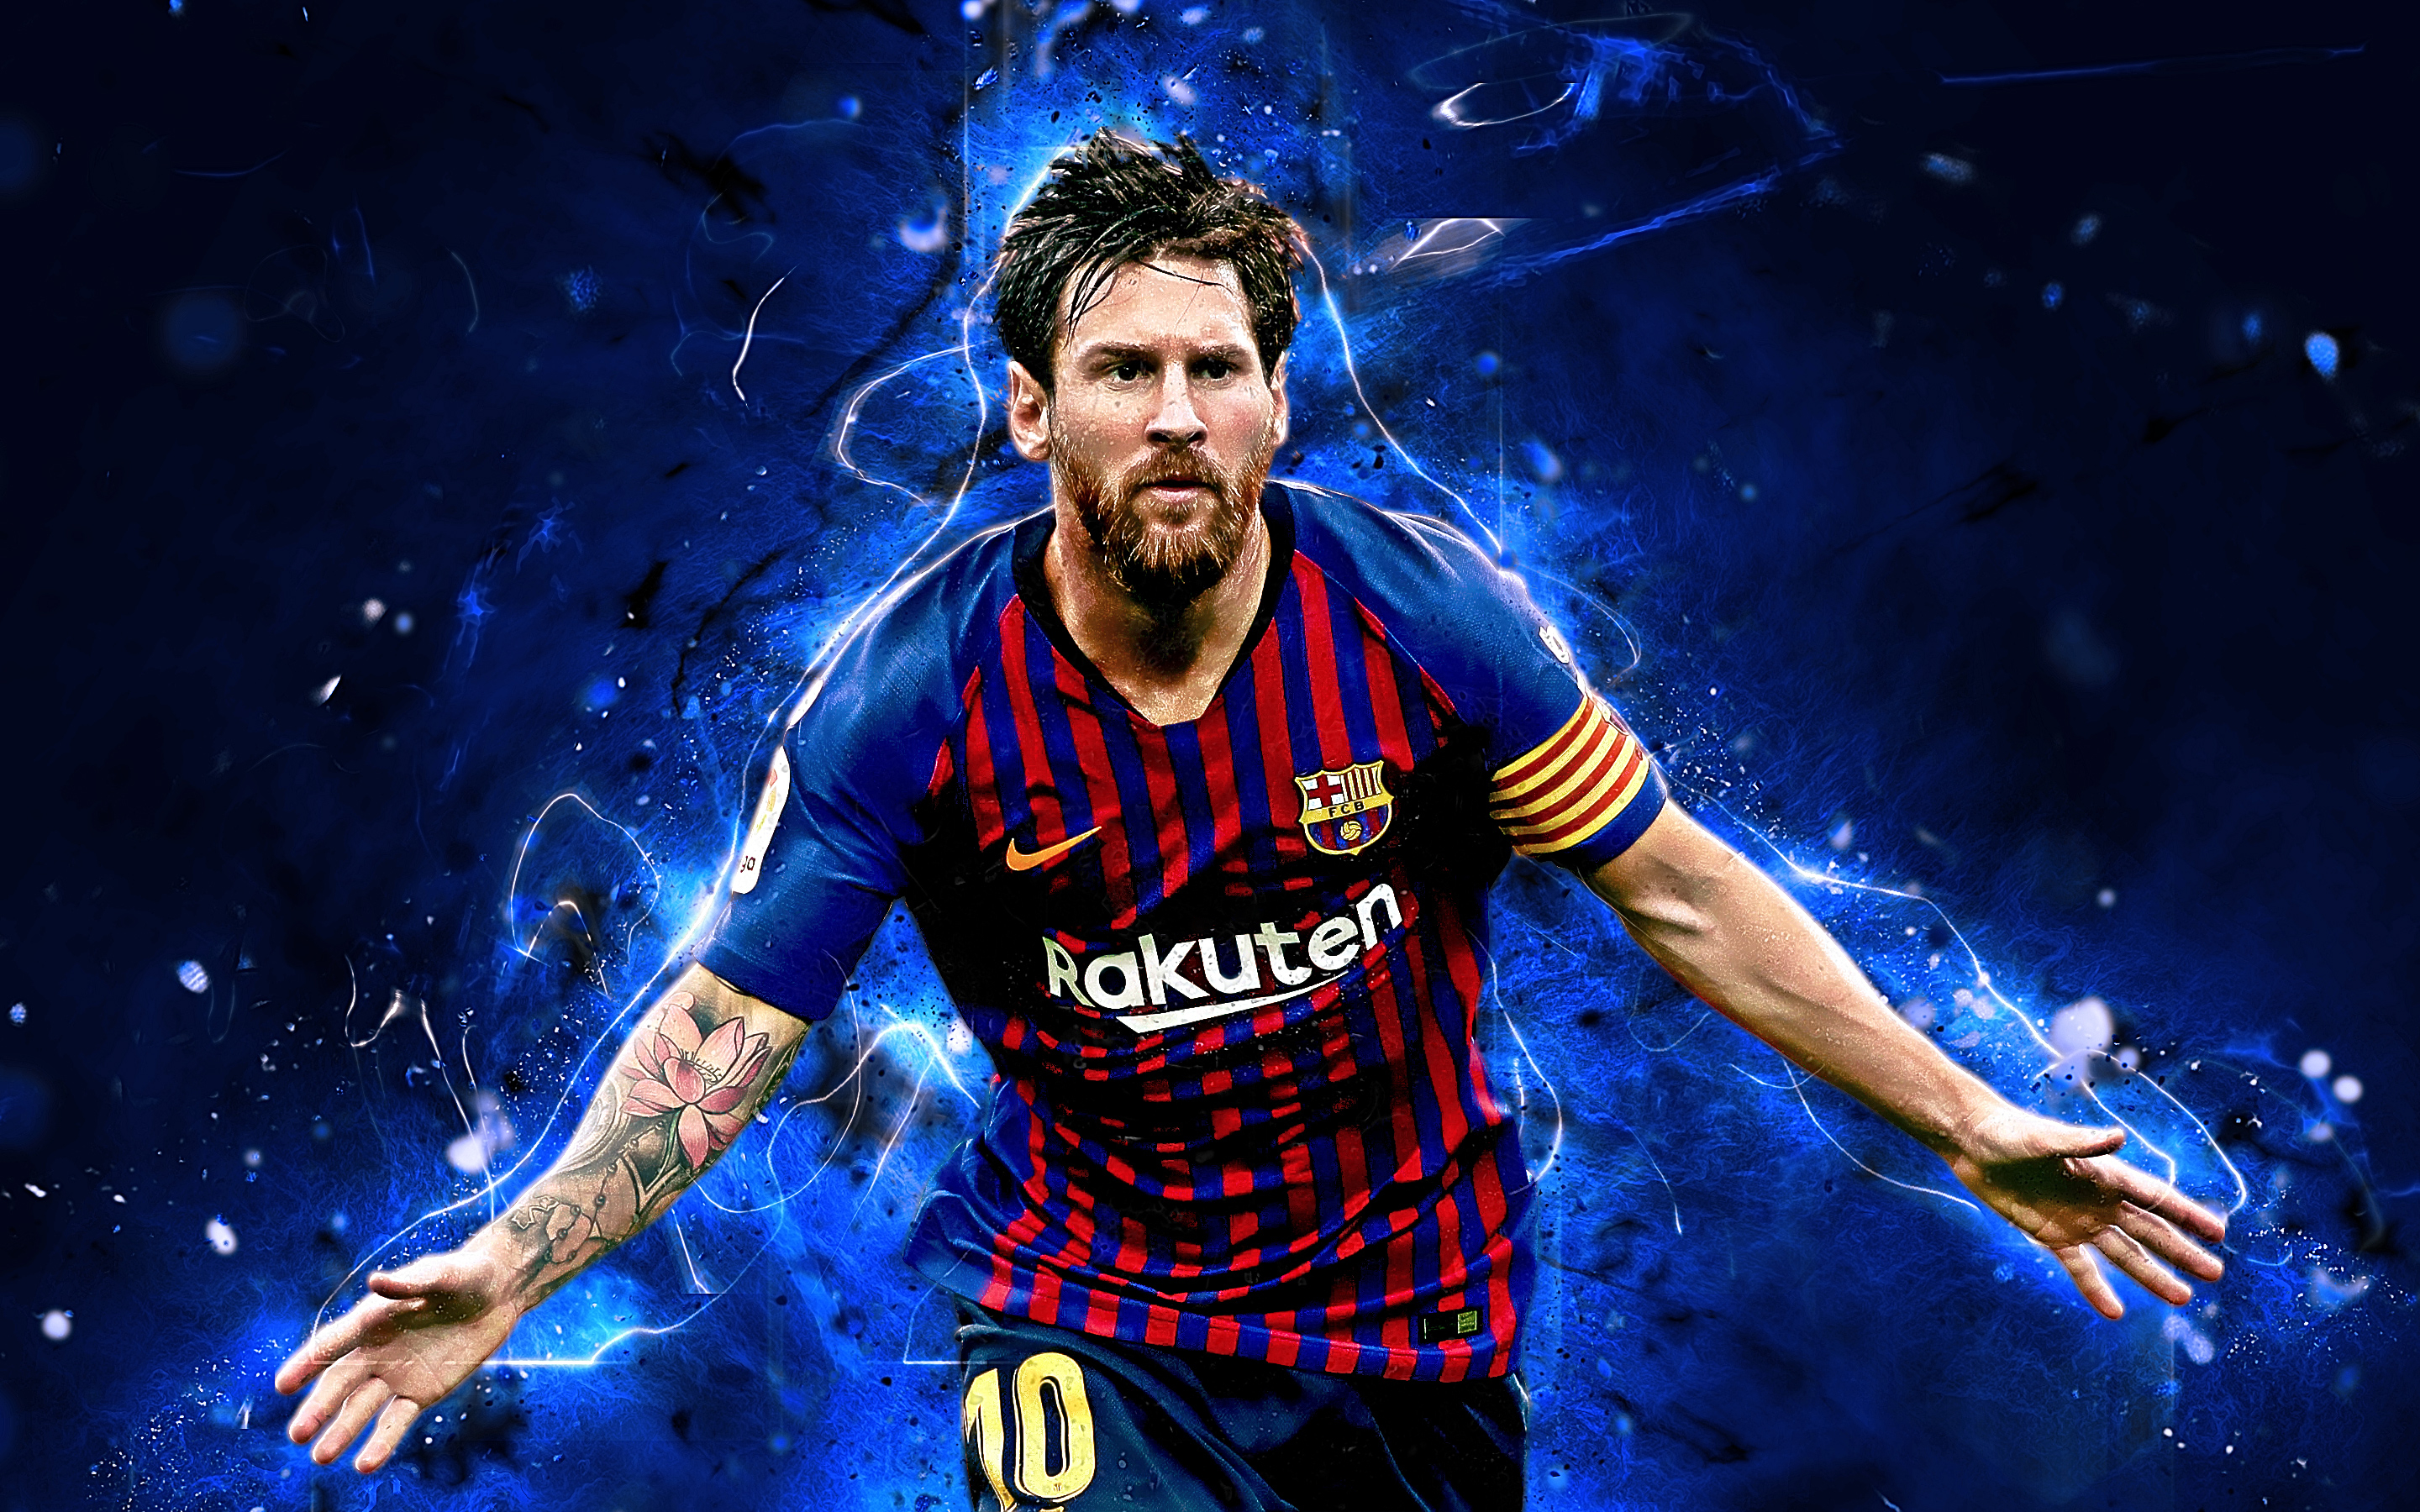 Descargar las imágenes de Lionel Messi gratis para teléfonos Android y  iPhone, fondos de pantalla de Lionel Messi para teléfonos móviles